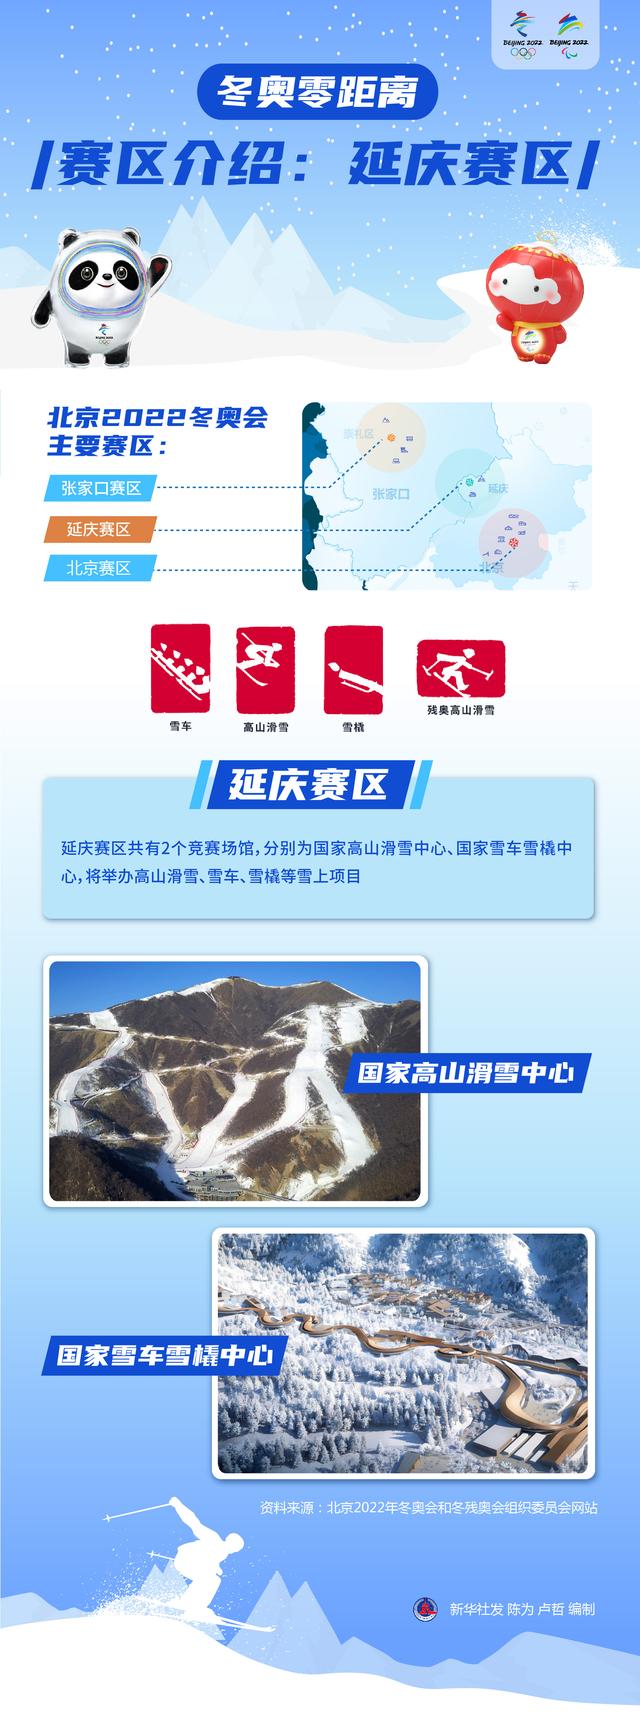 重报带你看冬奥｜“雪飞燕”渴望见证中国滑雪腾飞